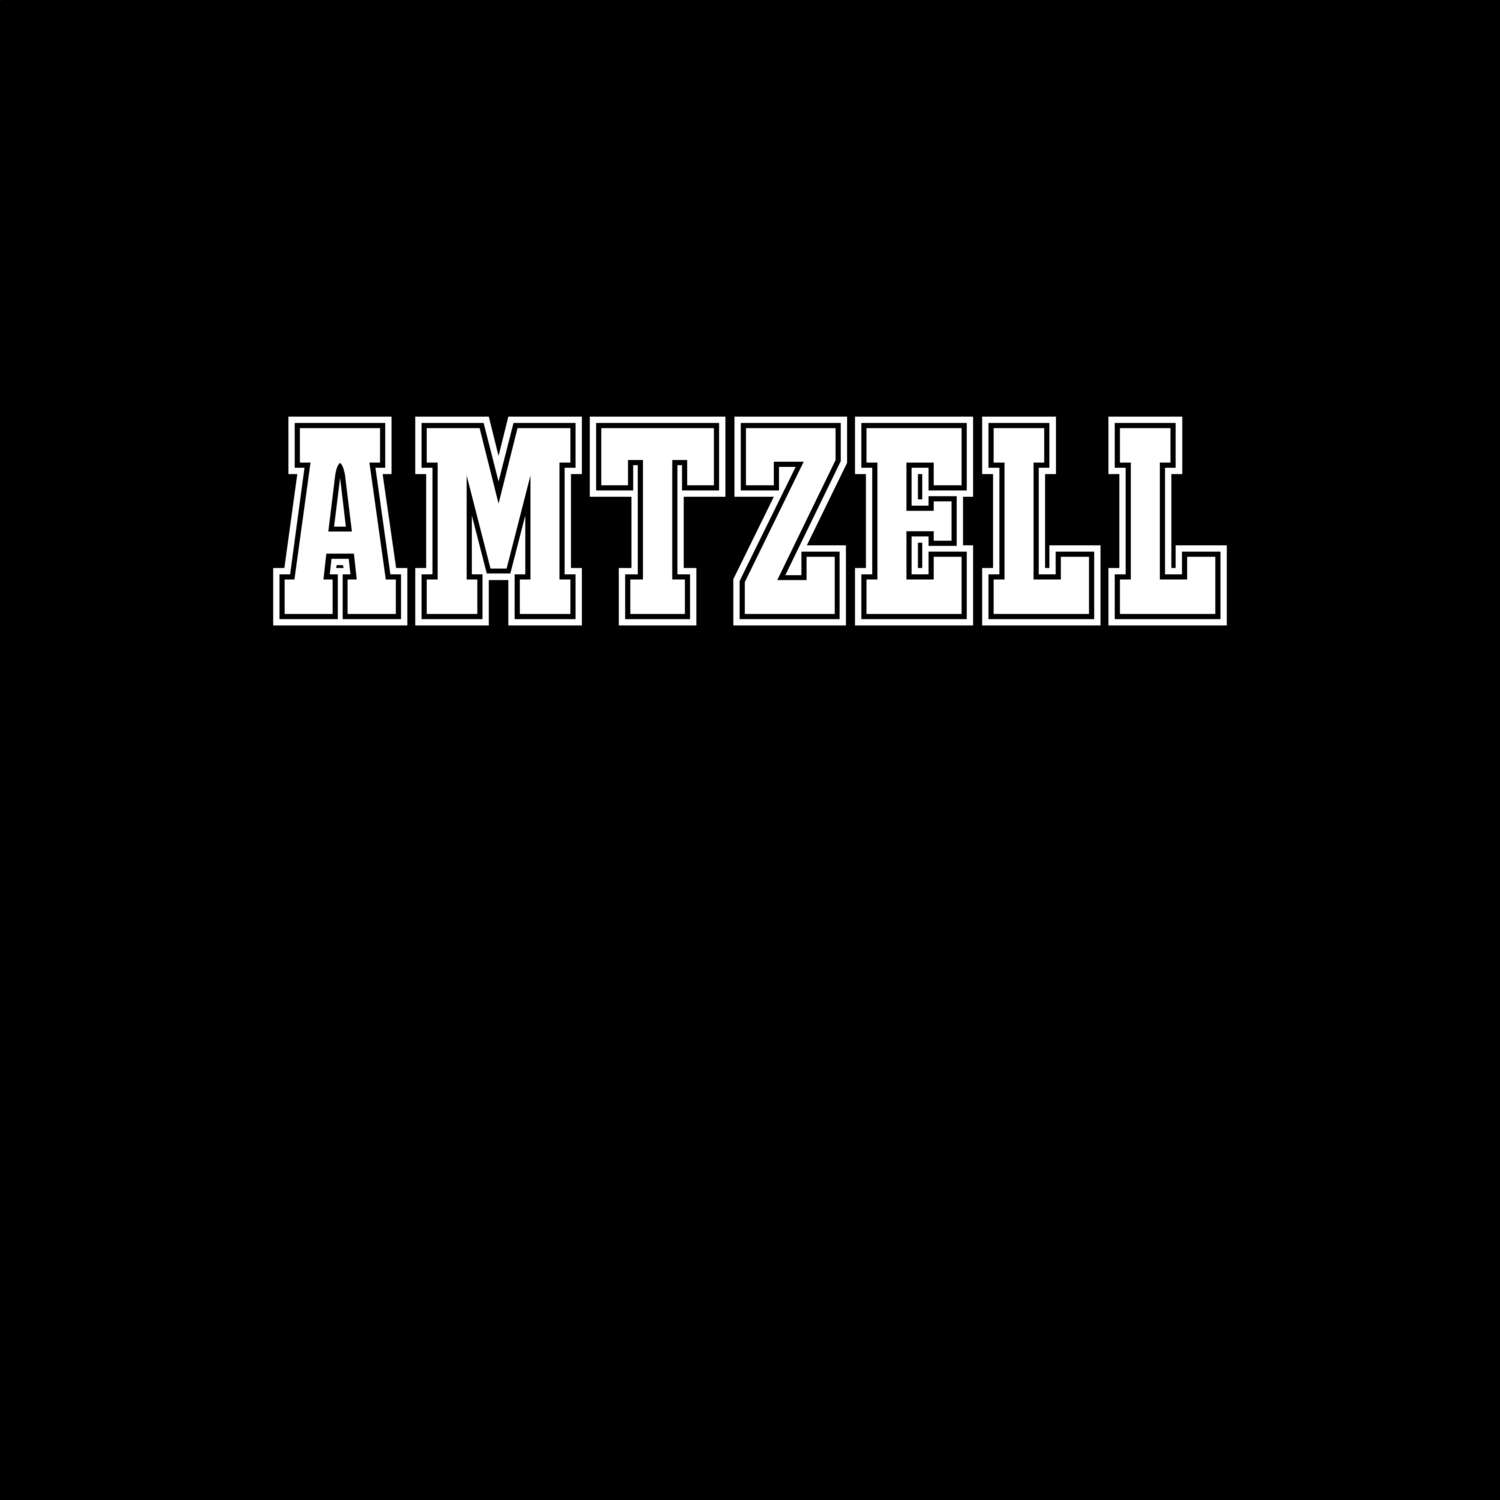 Amtzell T-Shirt »Classic«